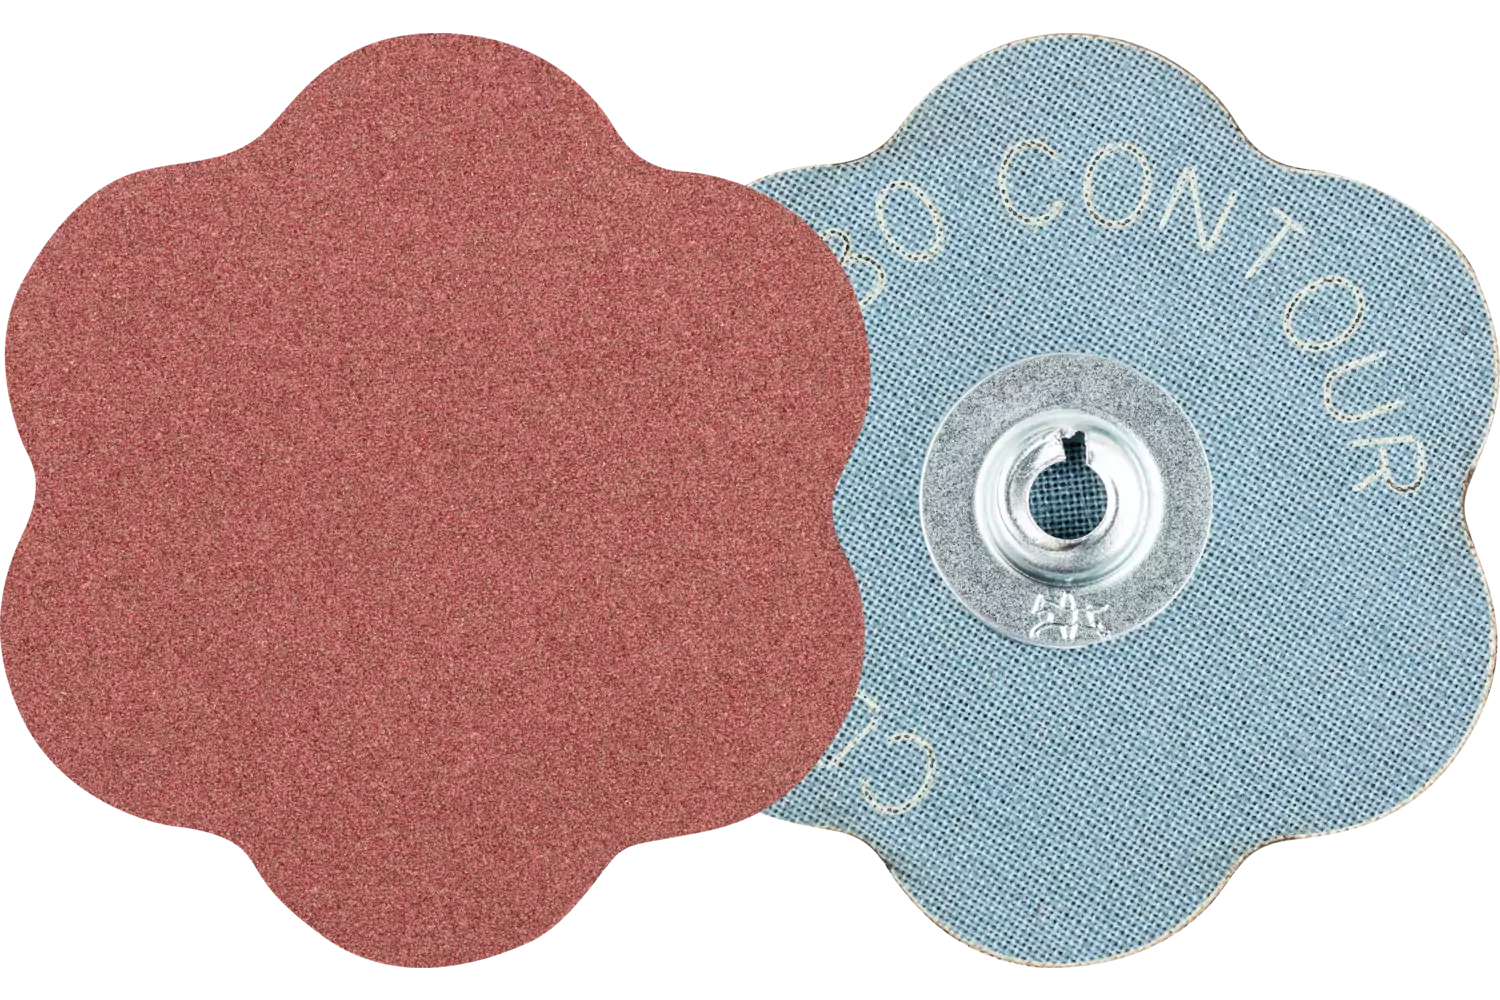 Pastille abrasive à grain corindon COMBIDISC CD Ø 60 mm A180 CONTOUR pour contours 1